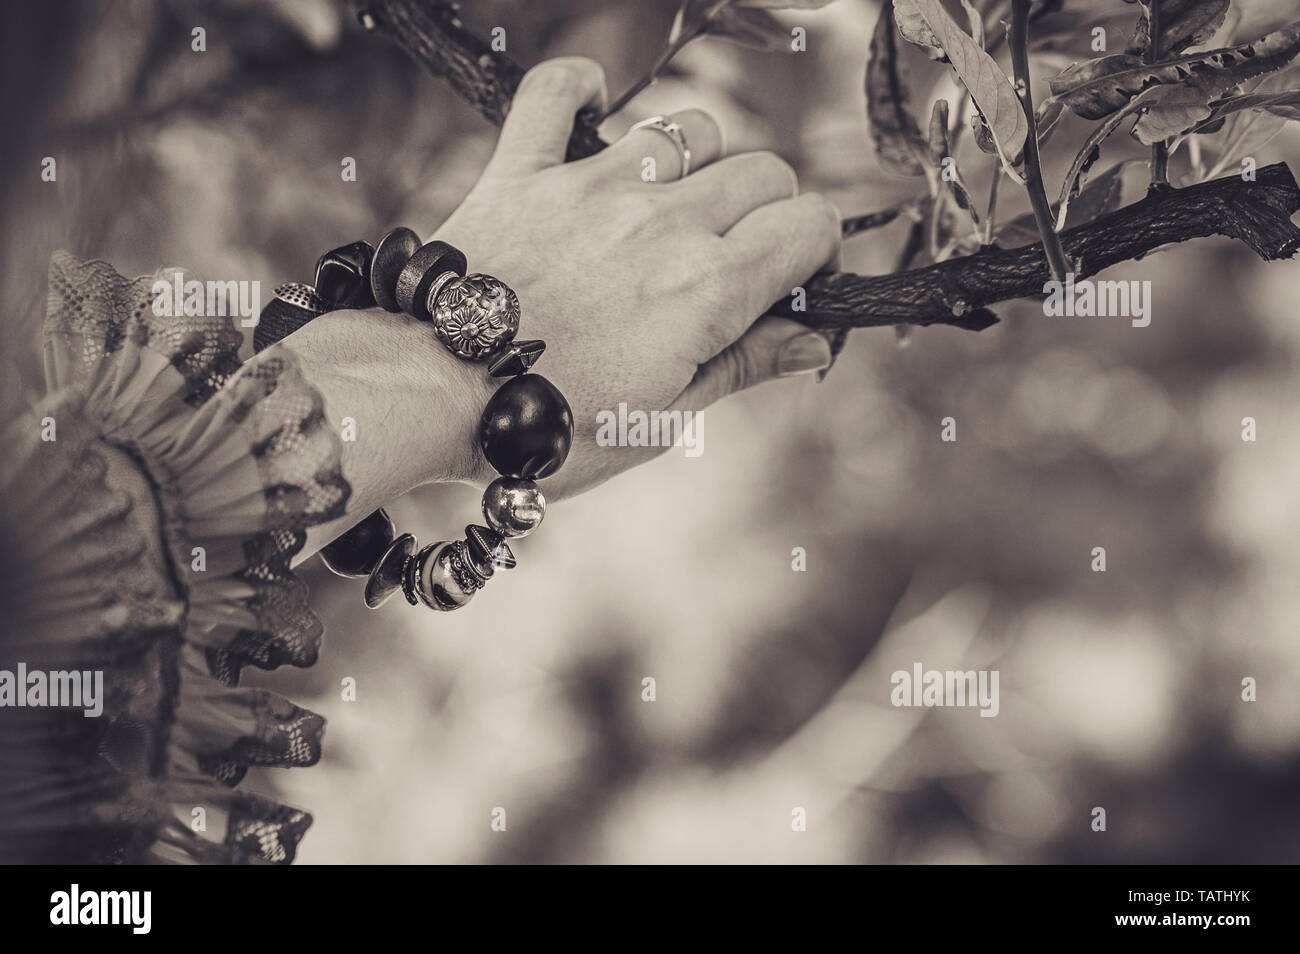 Close up of Gypsy Woman Style bracelet avec les mains avec de grands ornements en noir et blanc, et en saisissant une branche d'arbre orange Banque D'Images